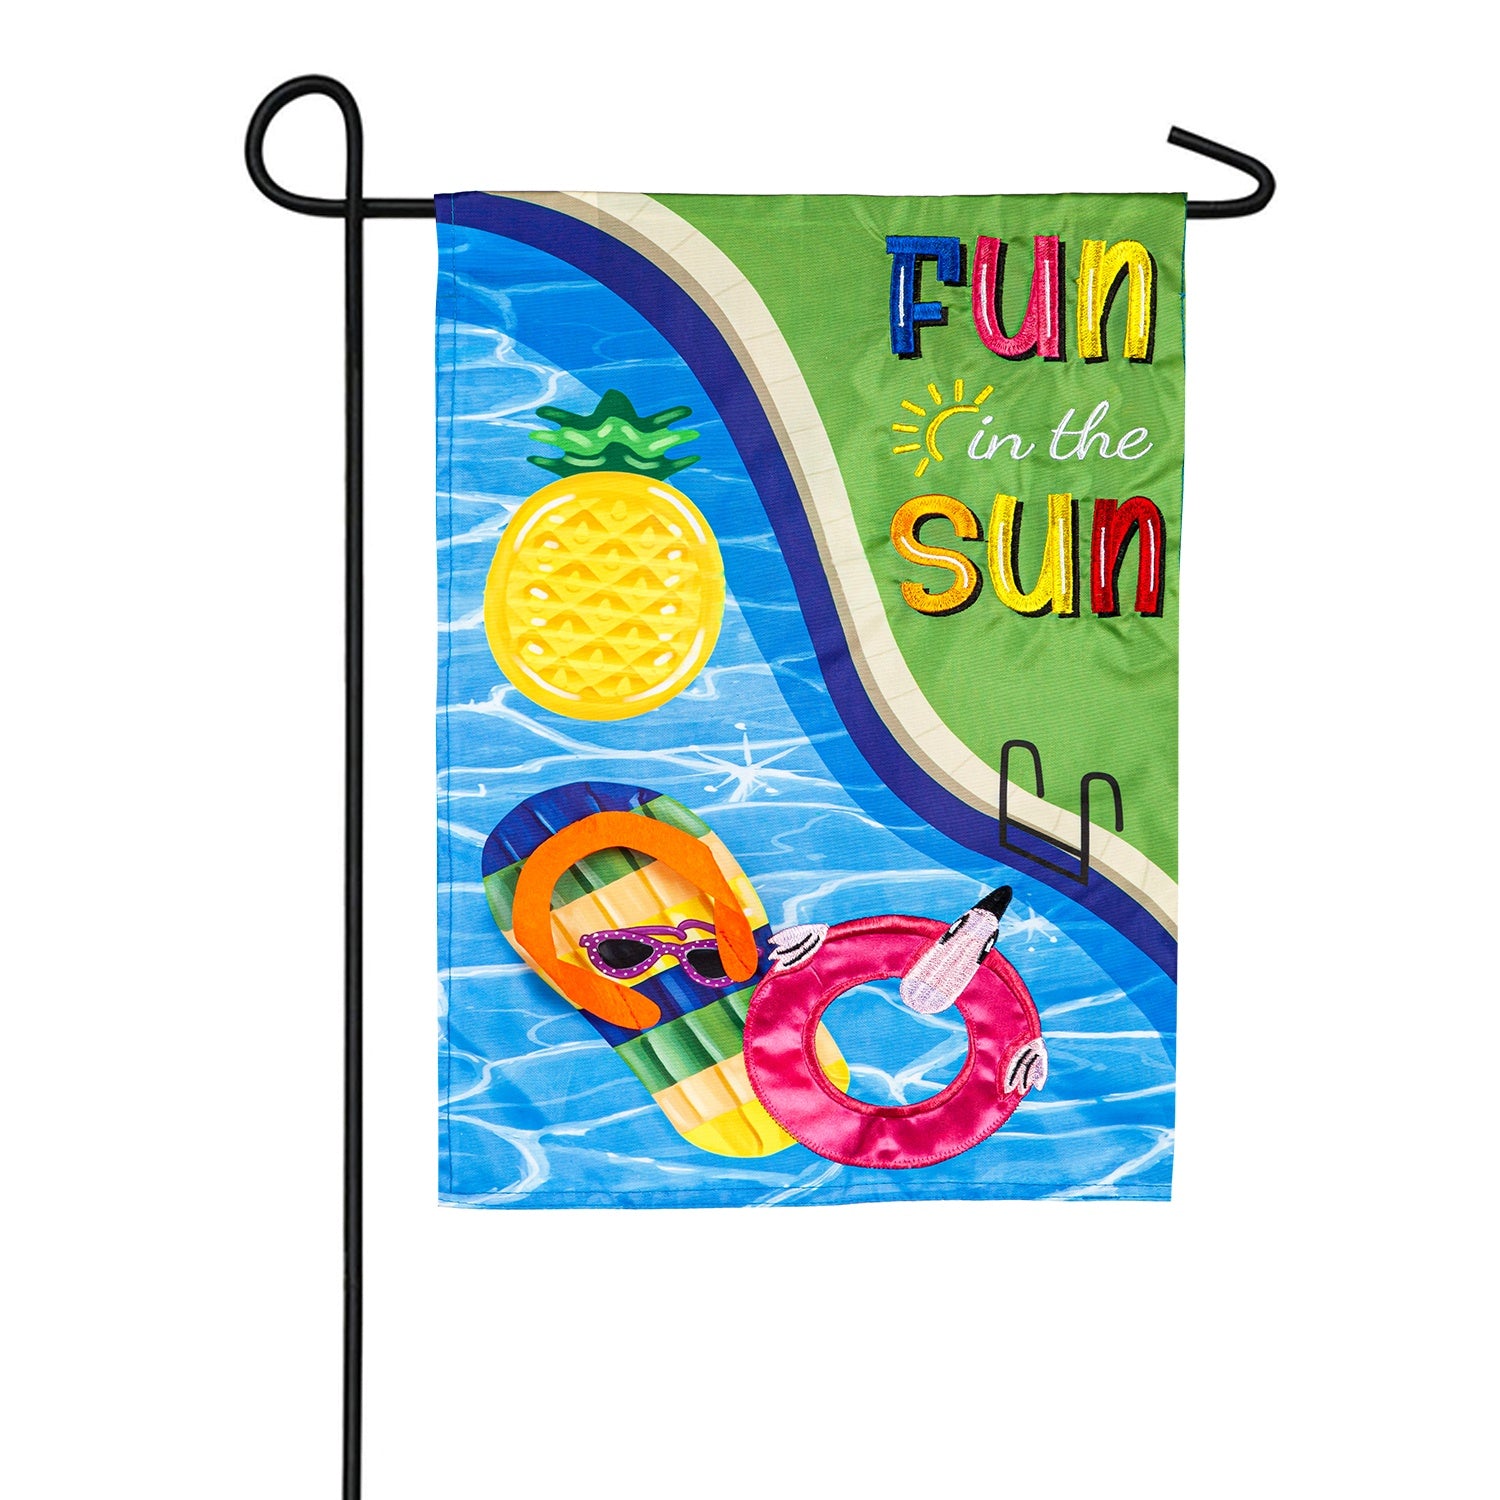 Fun in the Sun Pool Day Applique Garden Flag